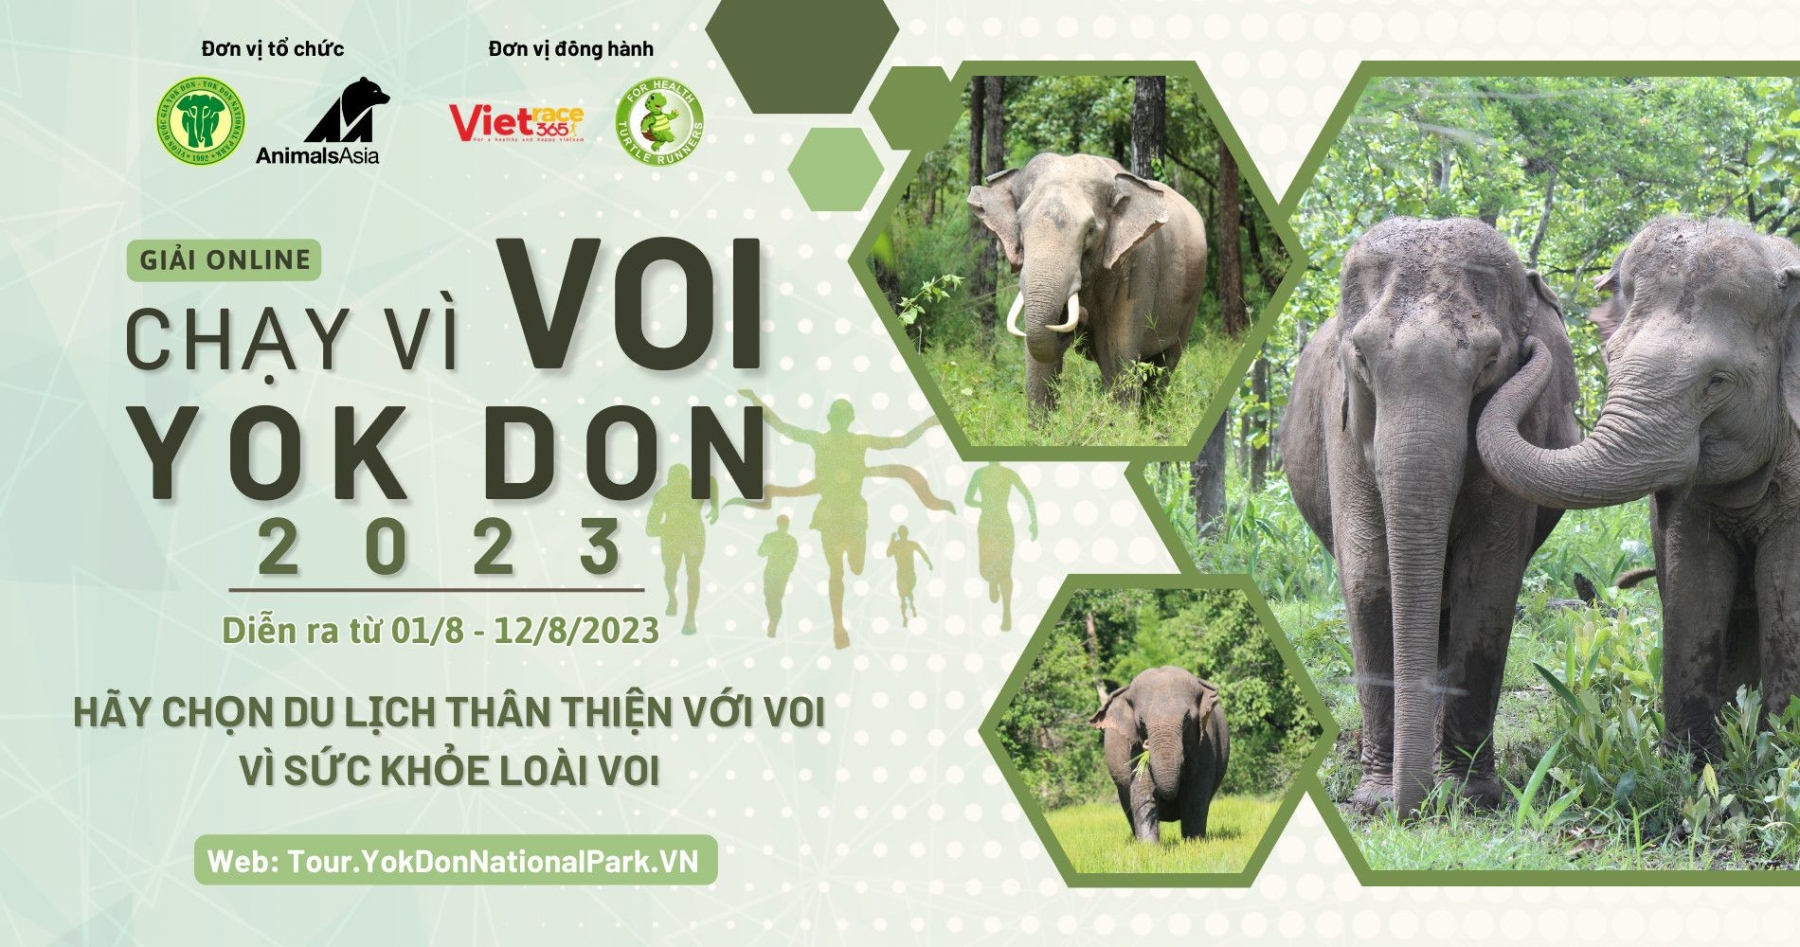 Giải online “Chạy vì loài voi Yok Don” lần 2 – 2023